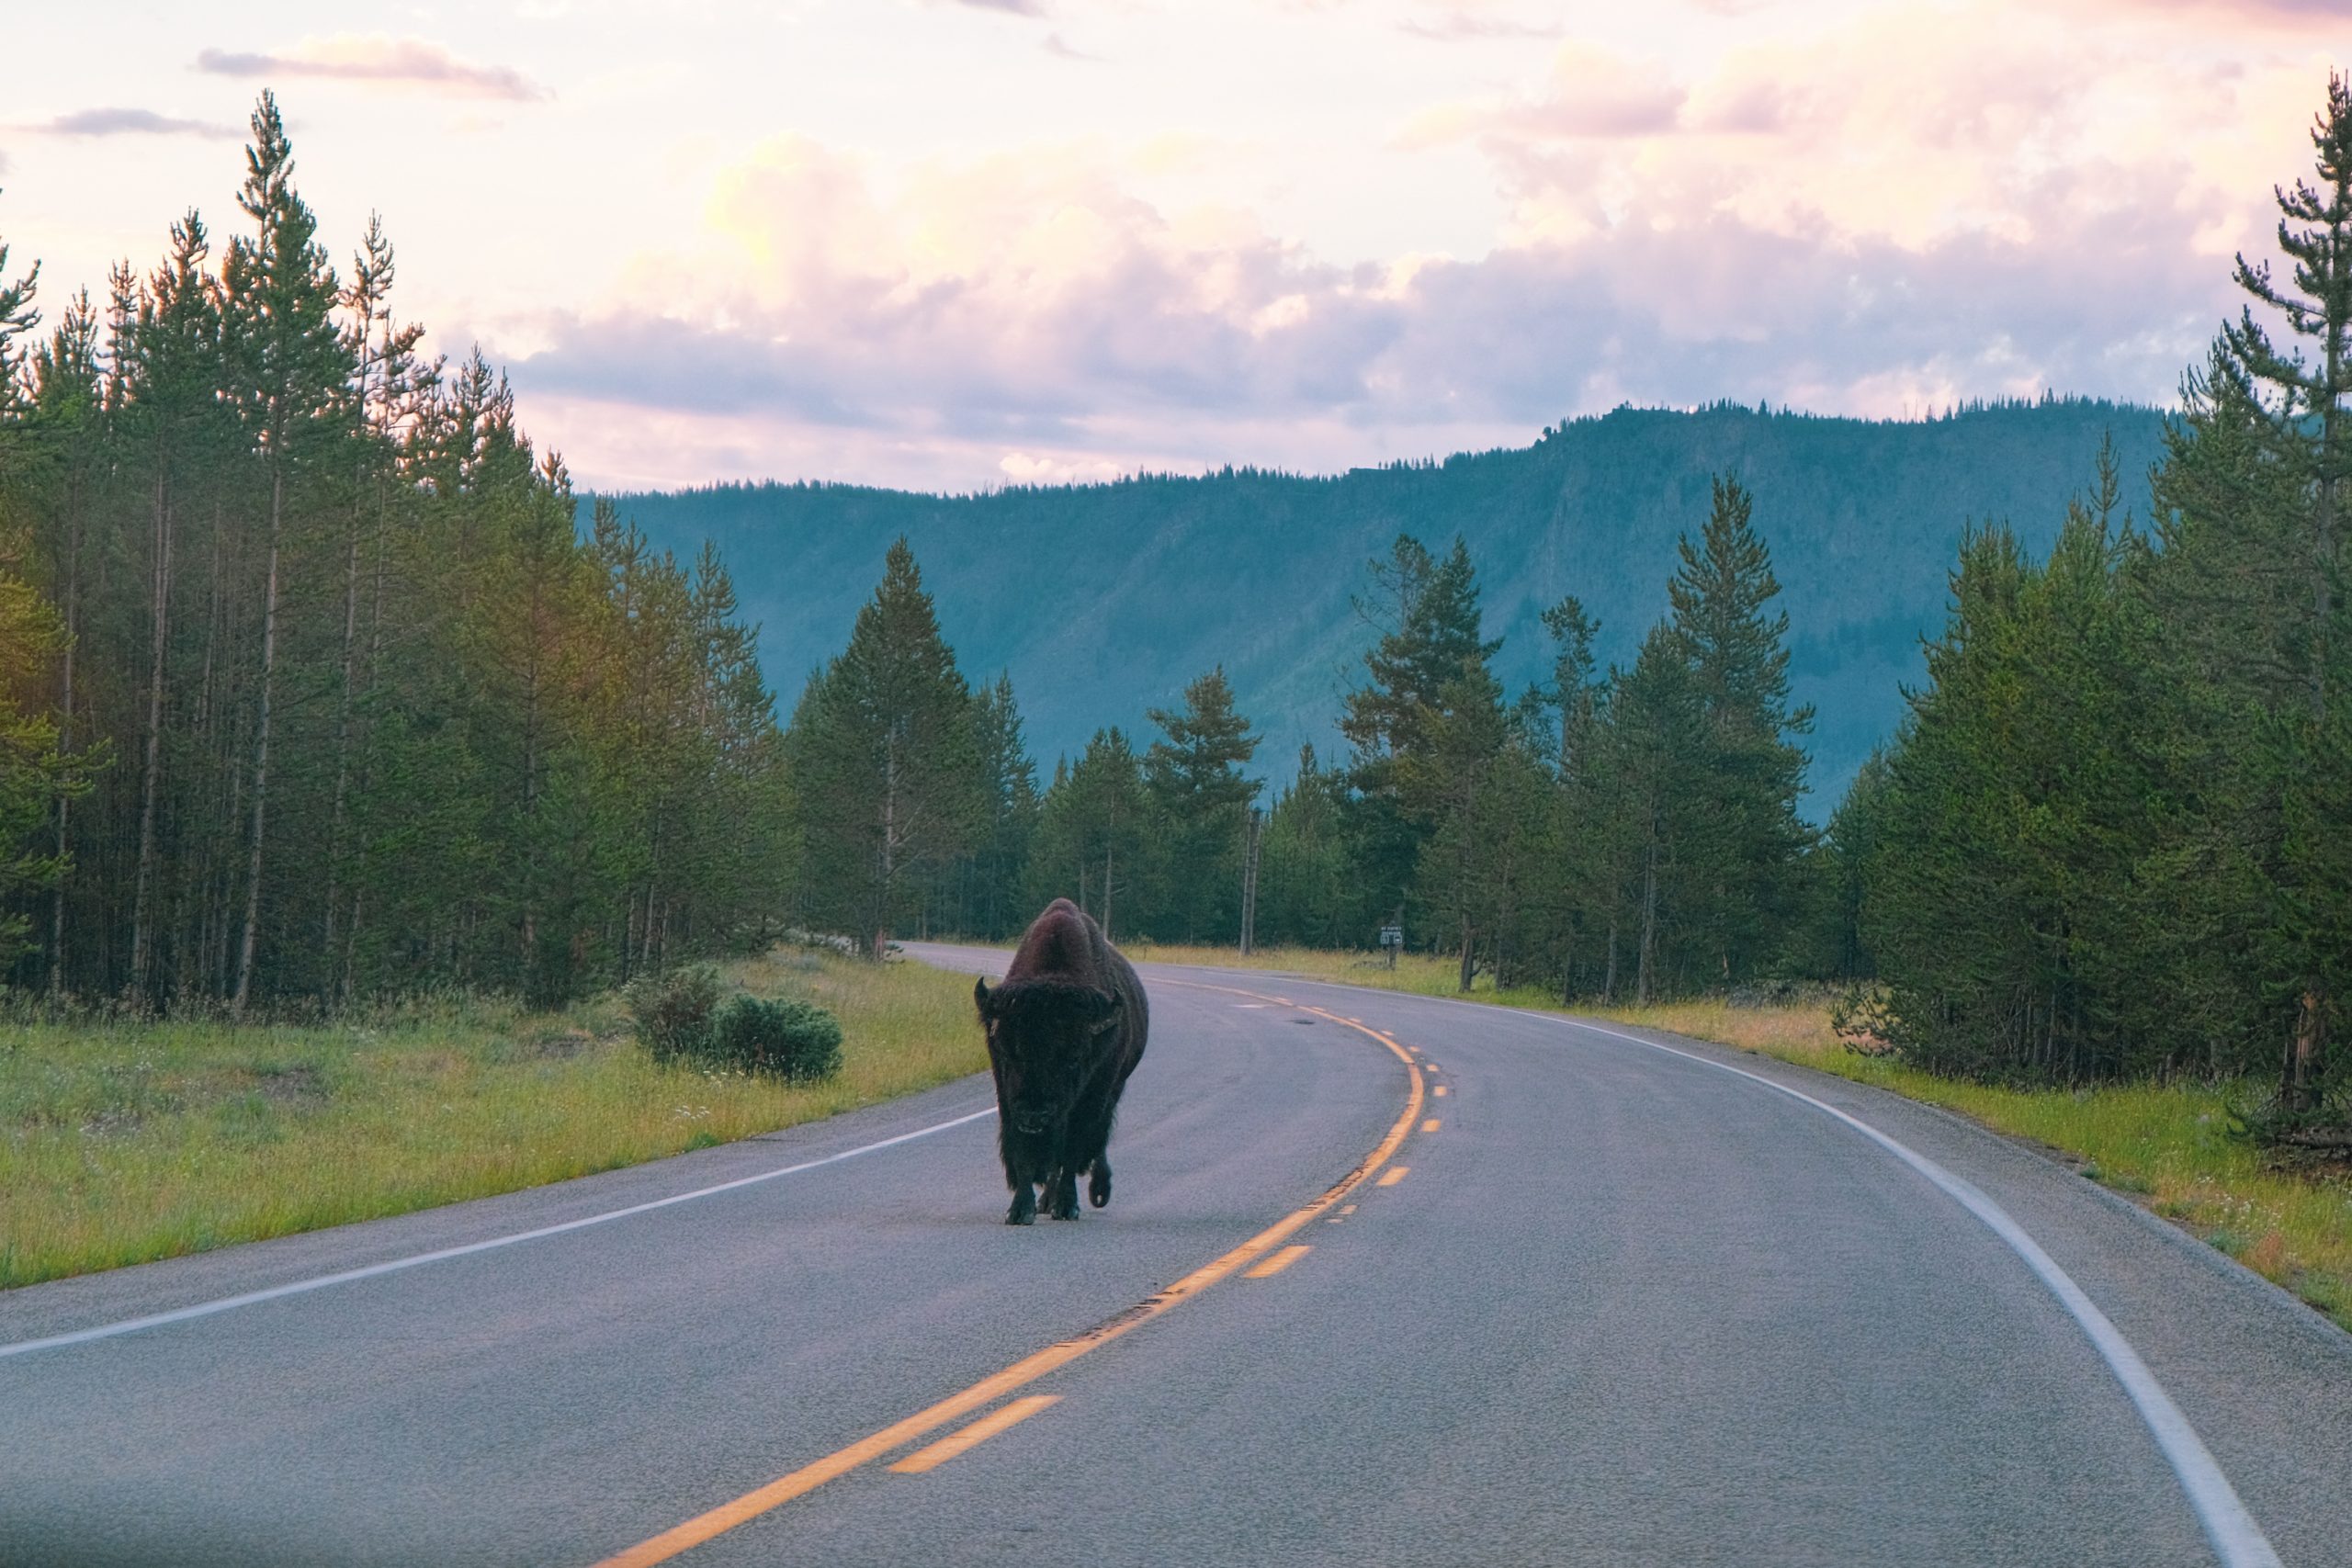 Un bisonte caminaba tranquilamente por la carretera mientras conducíamos hacia Yellowstone temprano en la mañana.